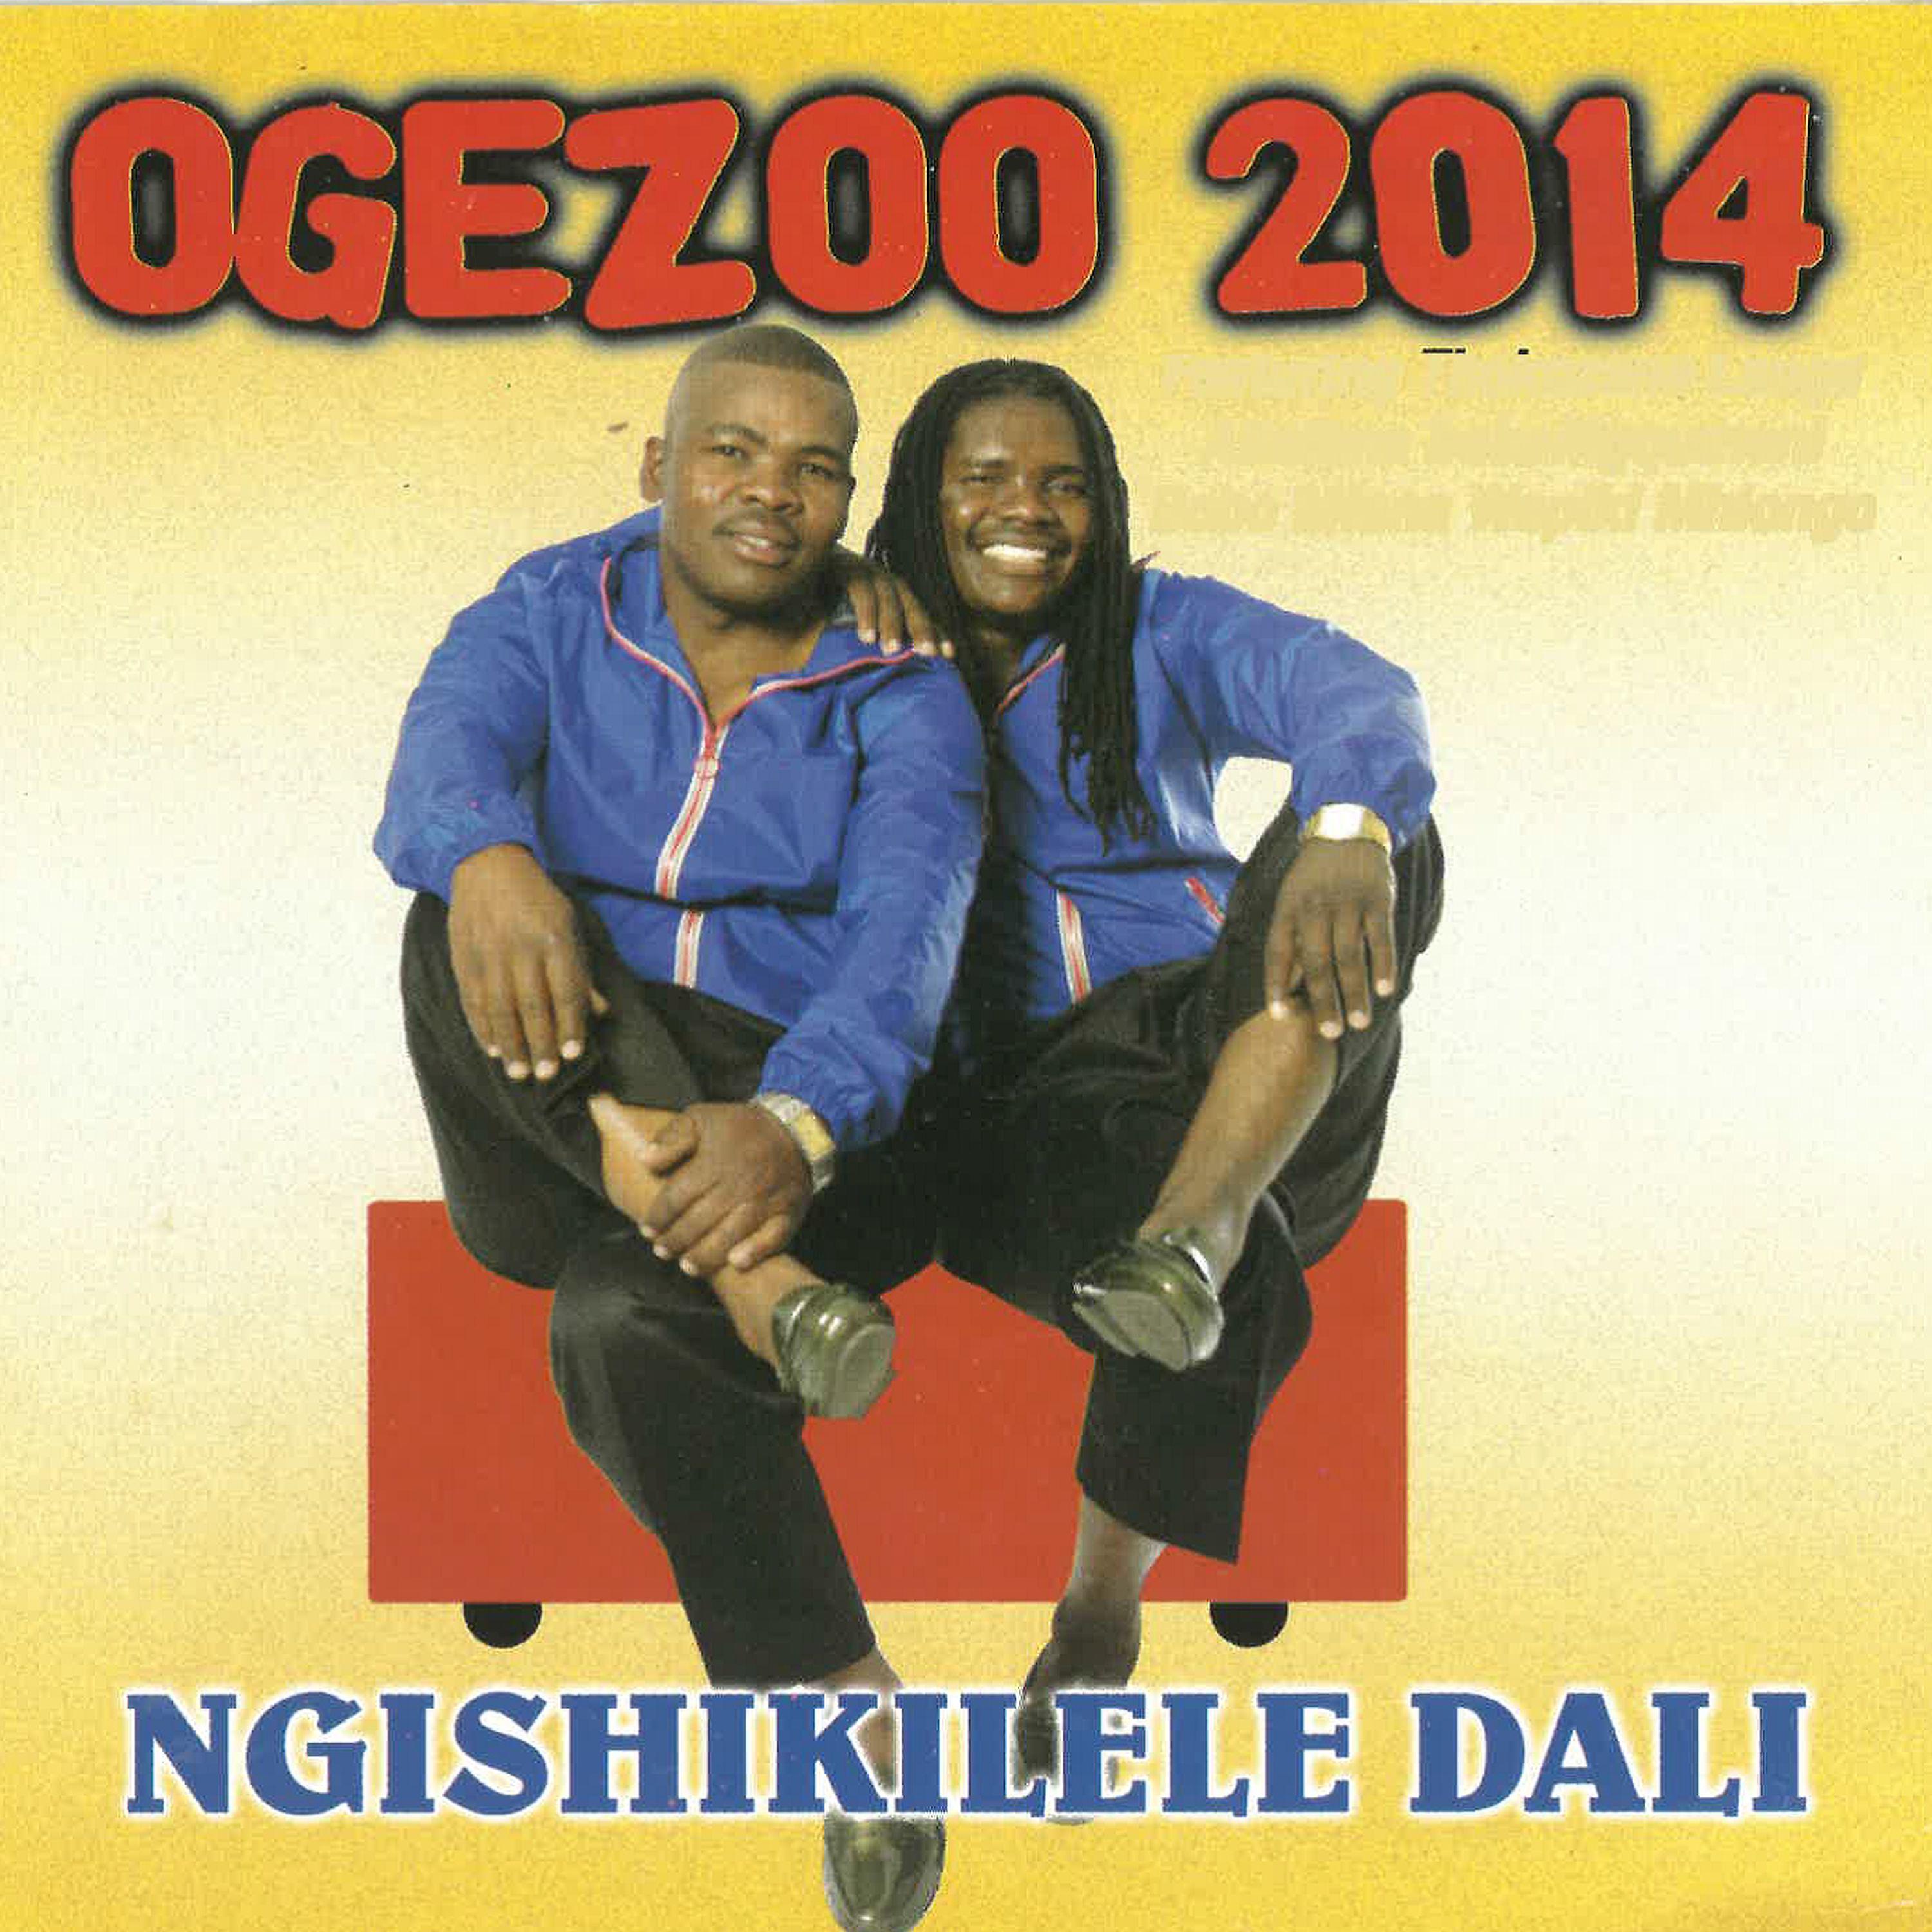 Ogezoo 2014 - Amaviyoviyo